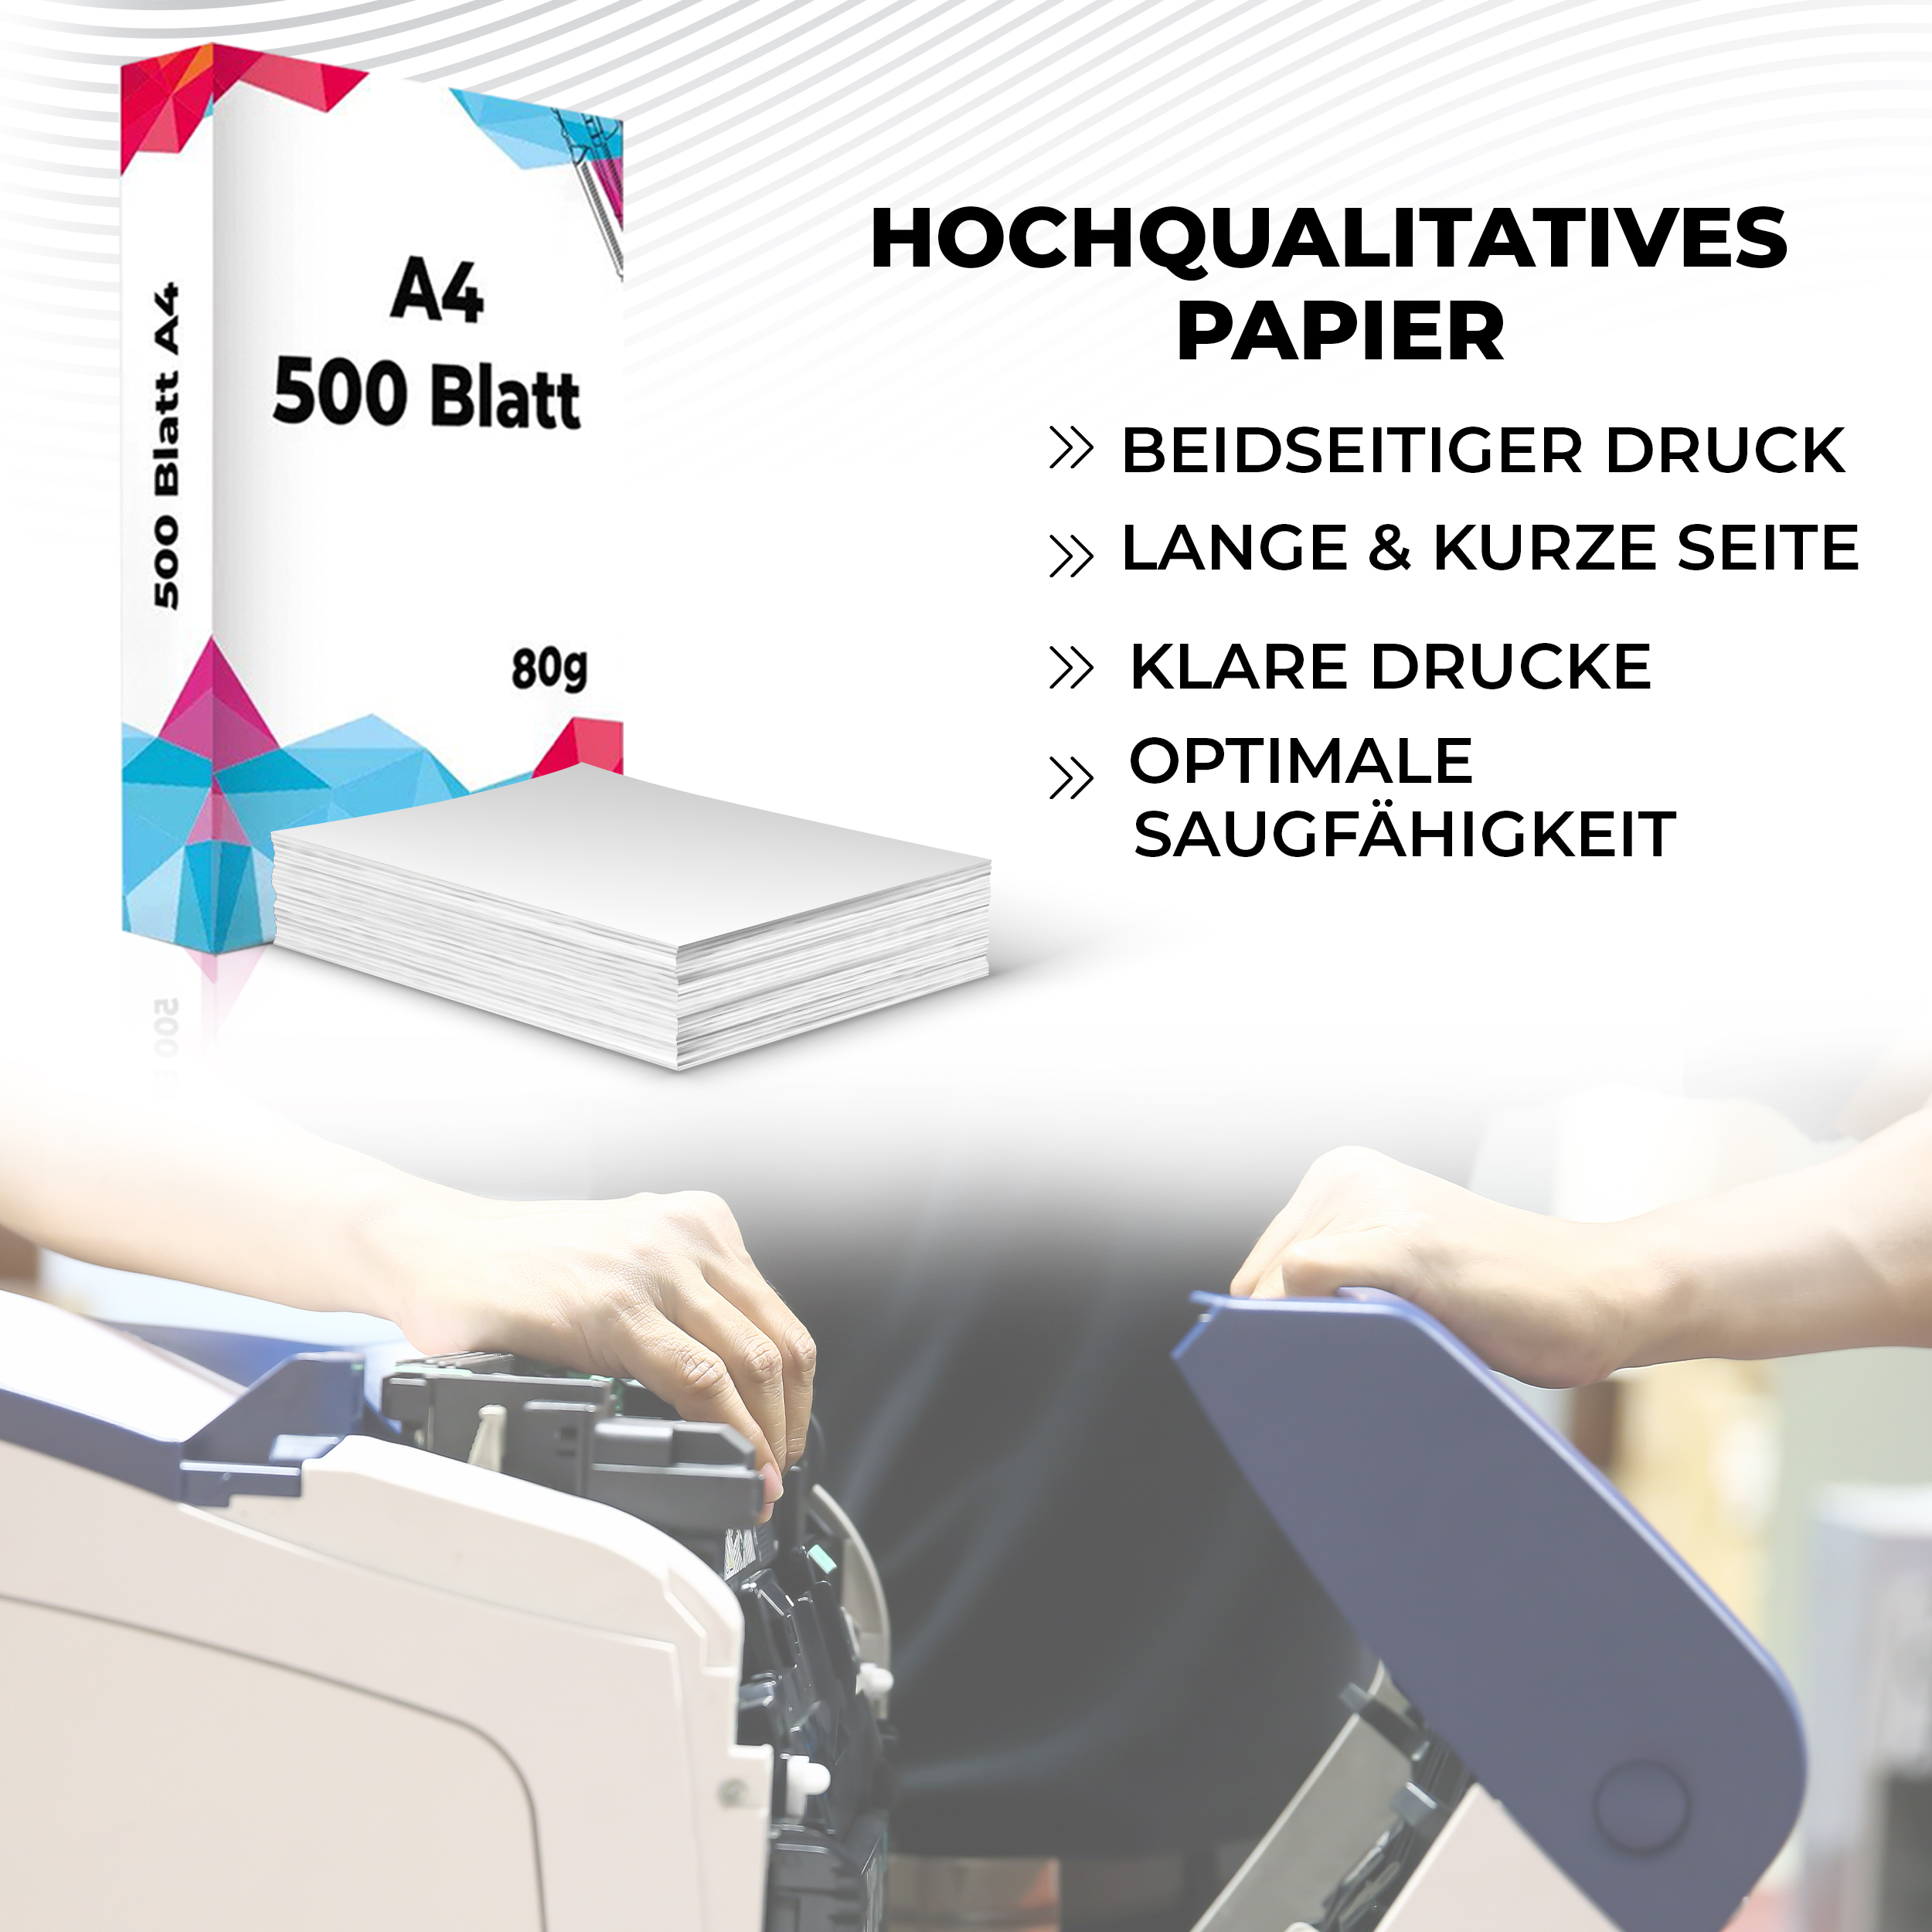 A4 A4 SPS Papier 80g/m² mm Druckerpapier Blatt Din 210x297 S-19697 5000